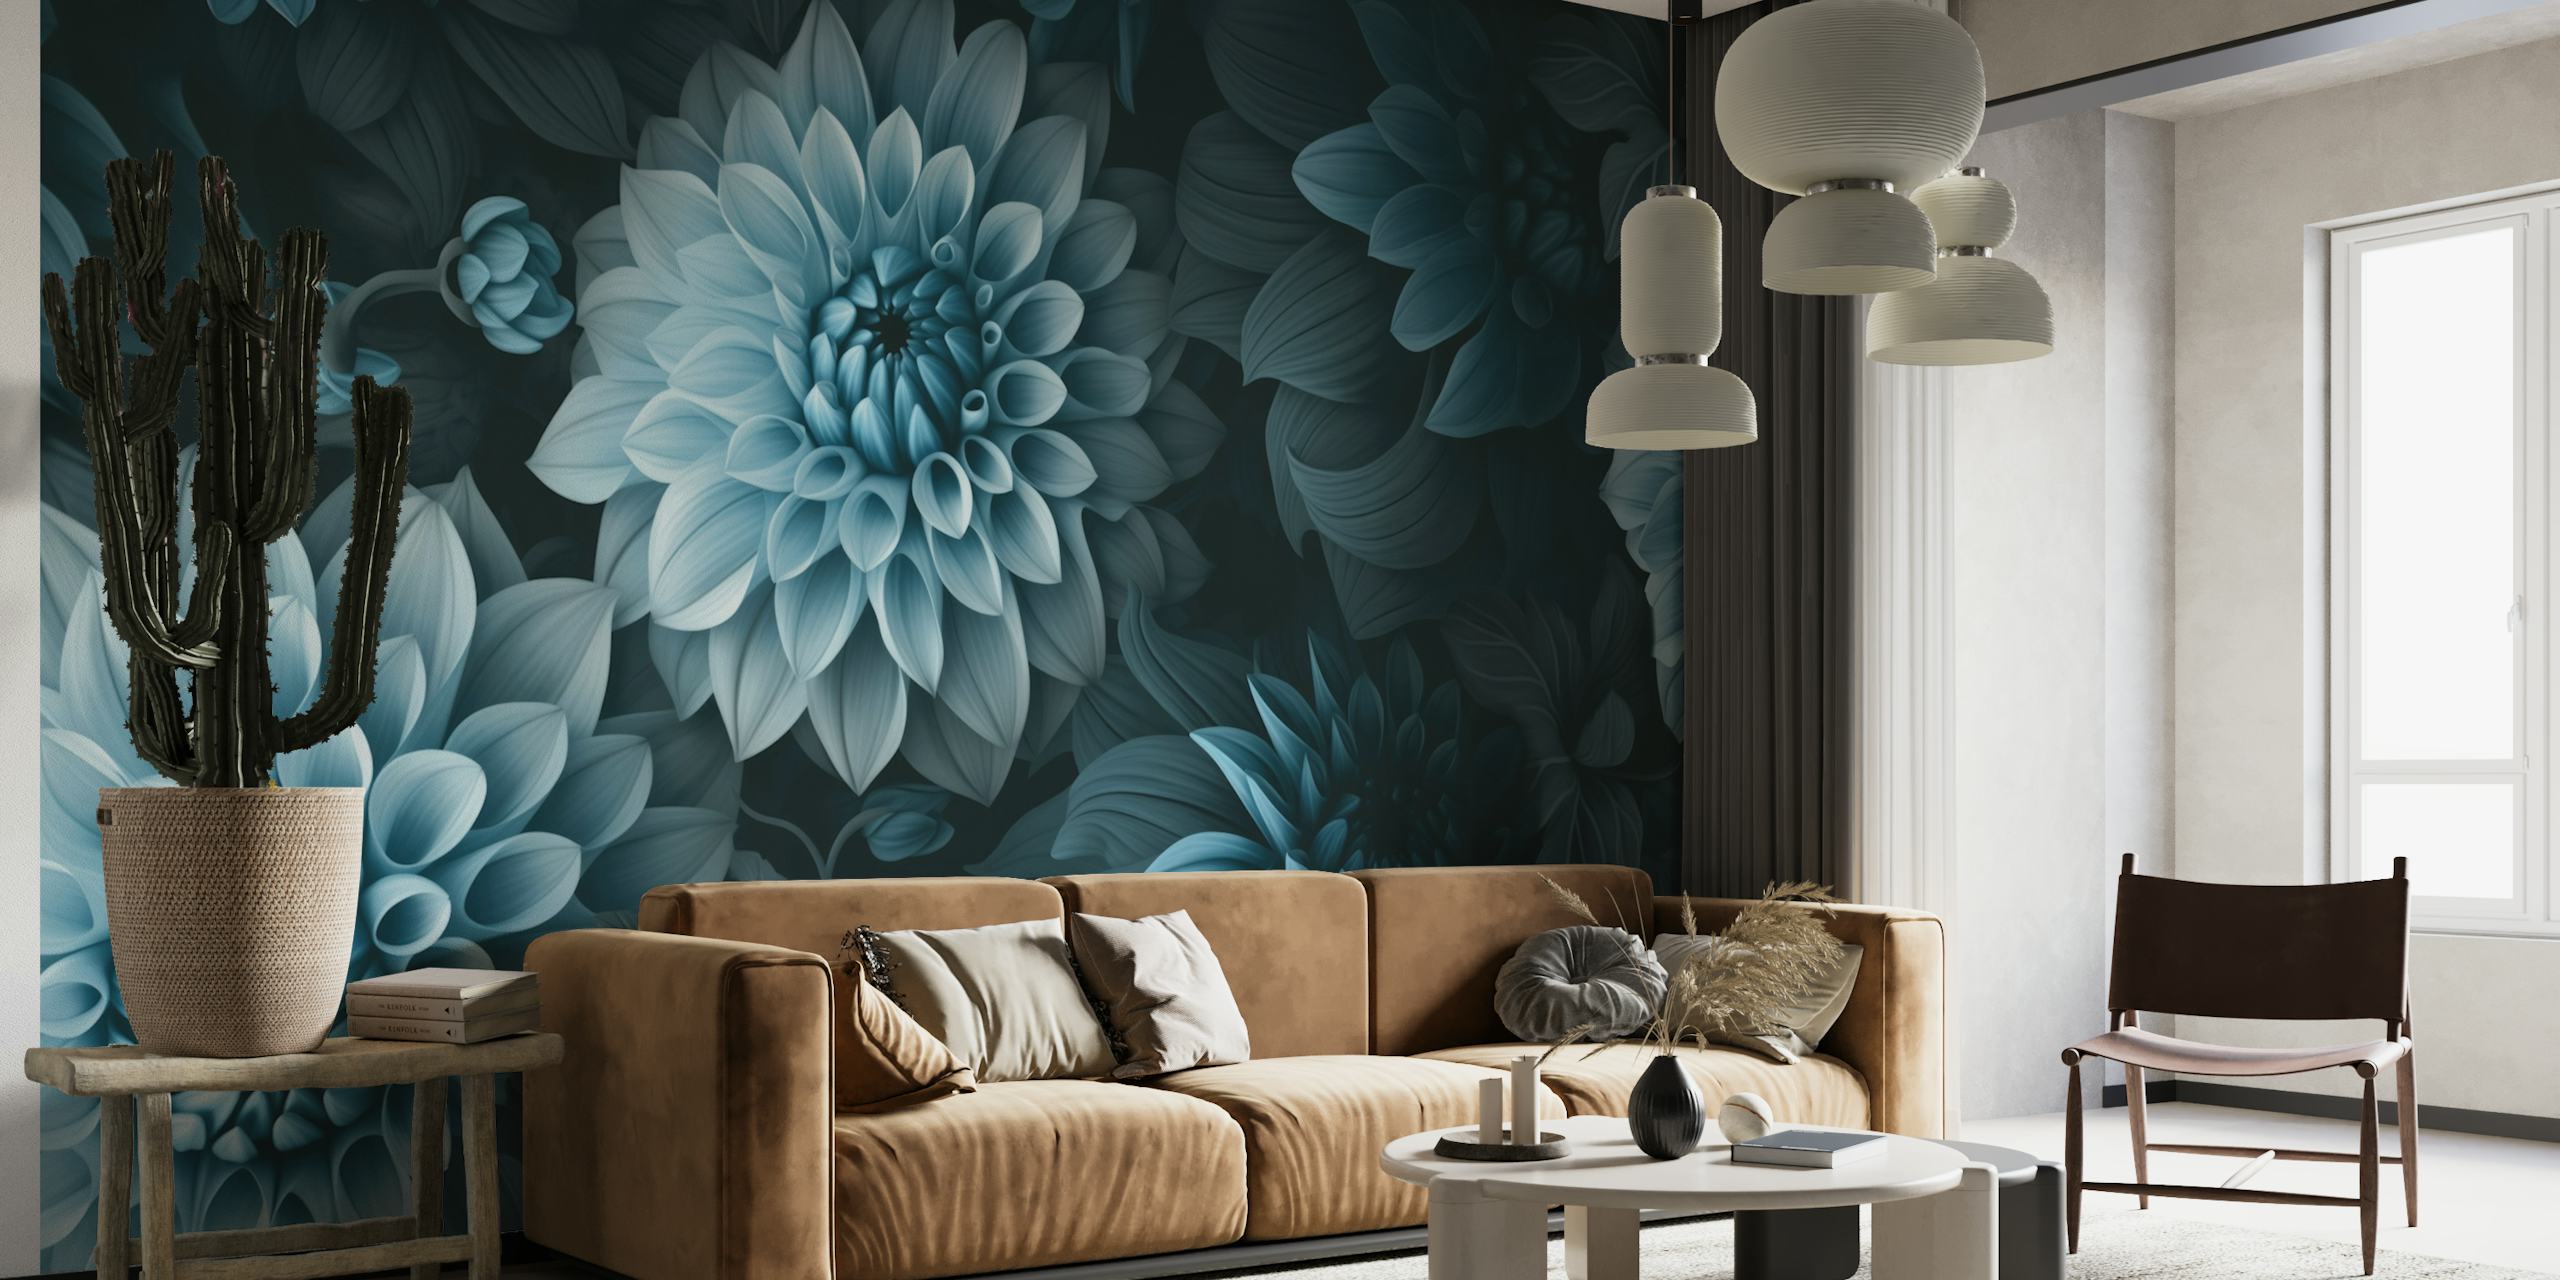 Opulento murale Moody Dahlia Flowers con ricche sfumature verde acqua e blu